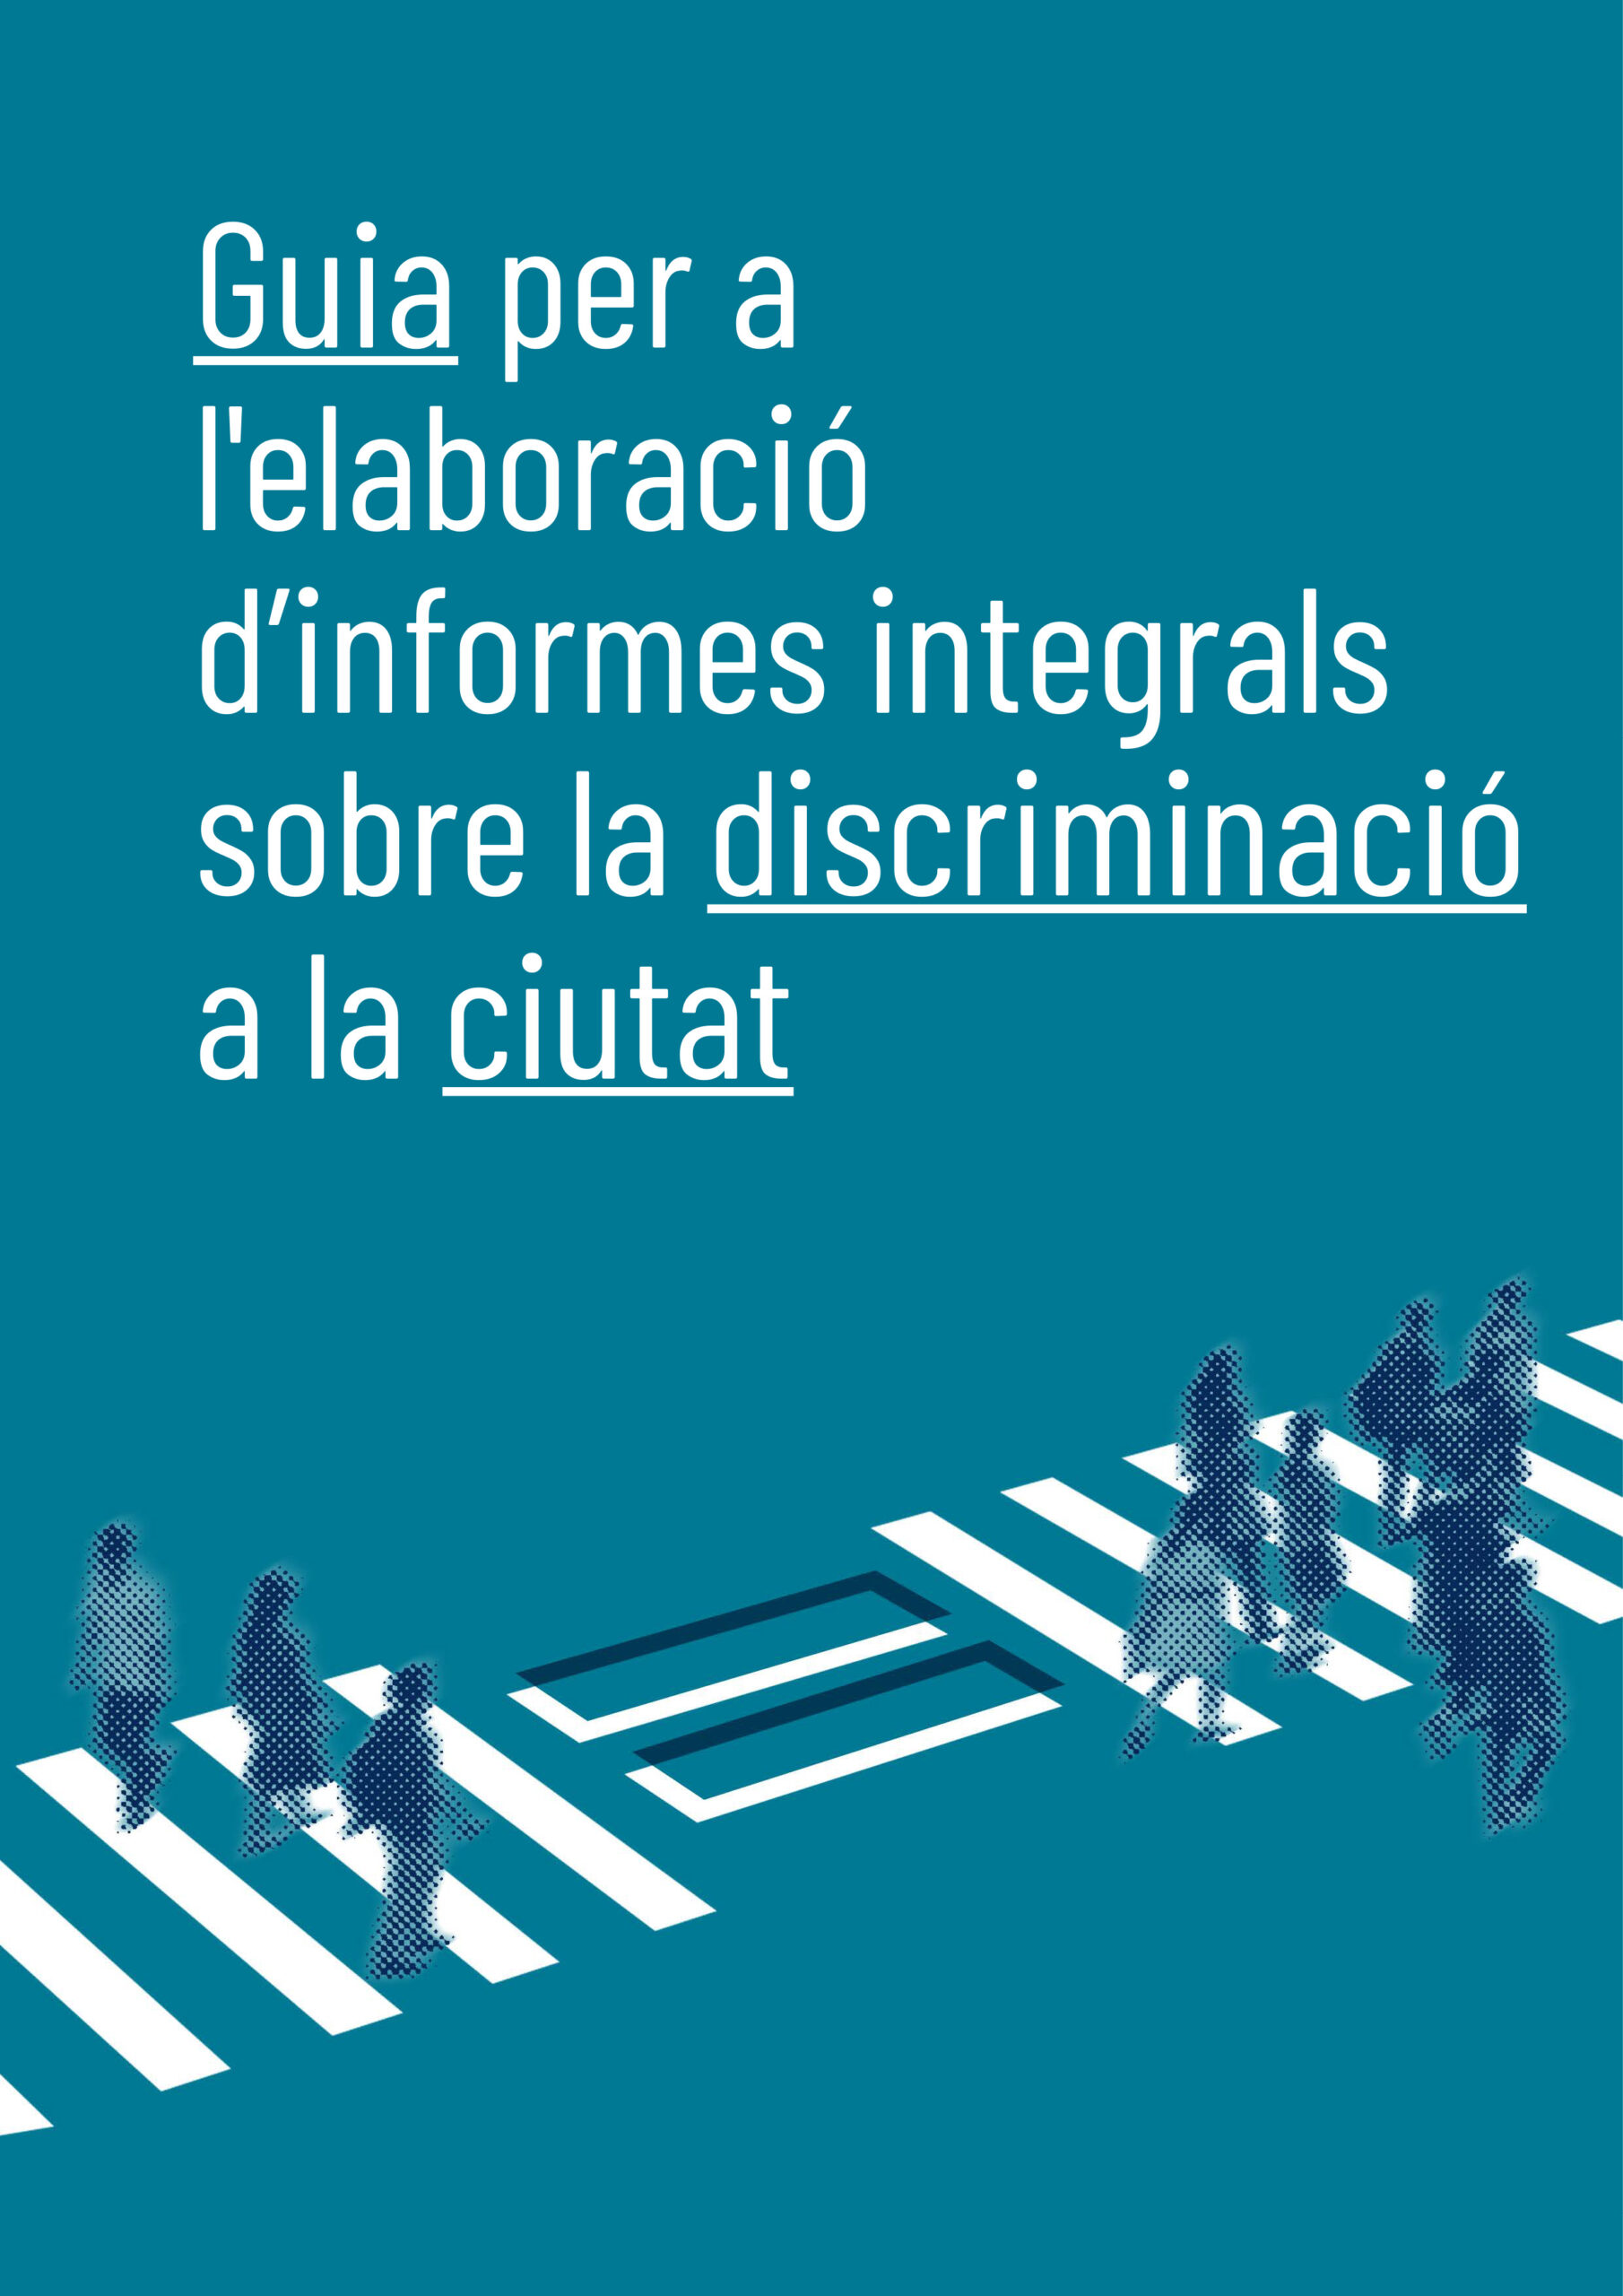 Guia per a l’elaboració d’informes integrals sobre la discriminació a la ciutat